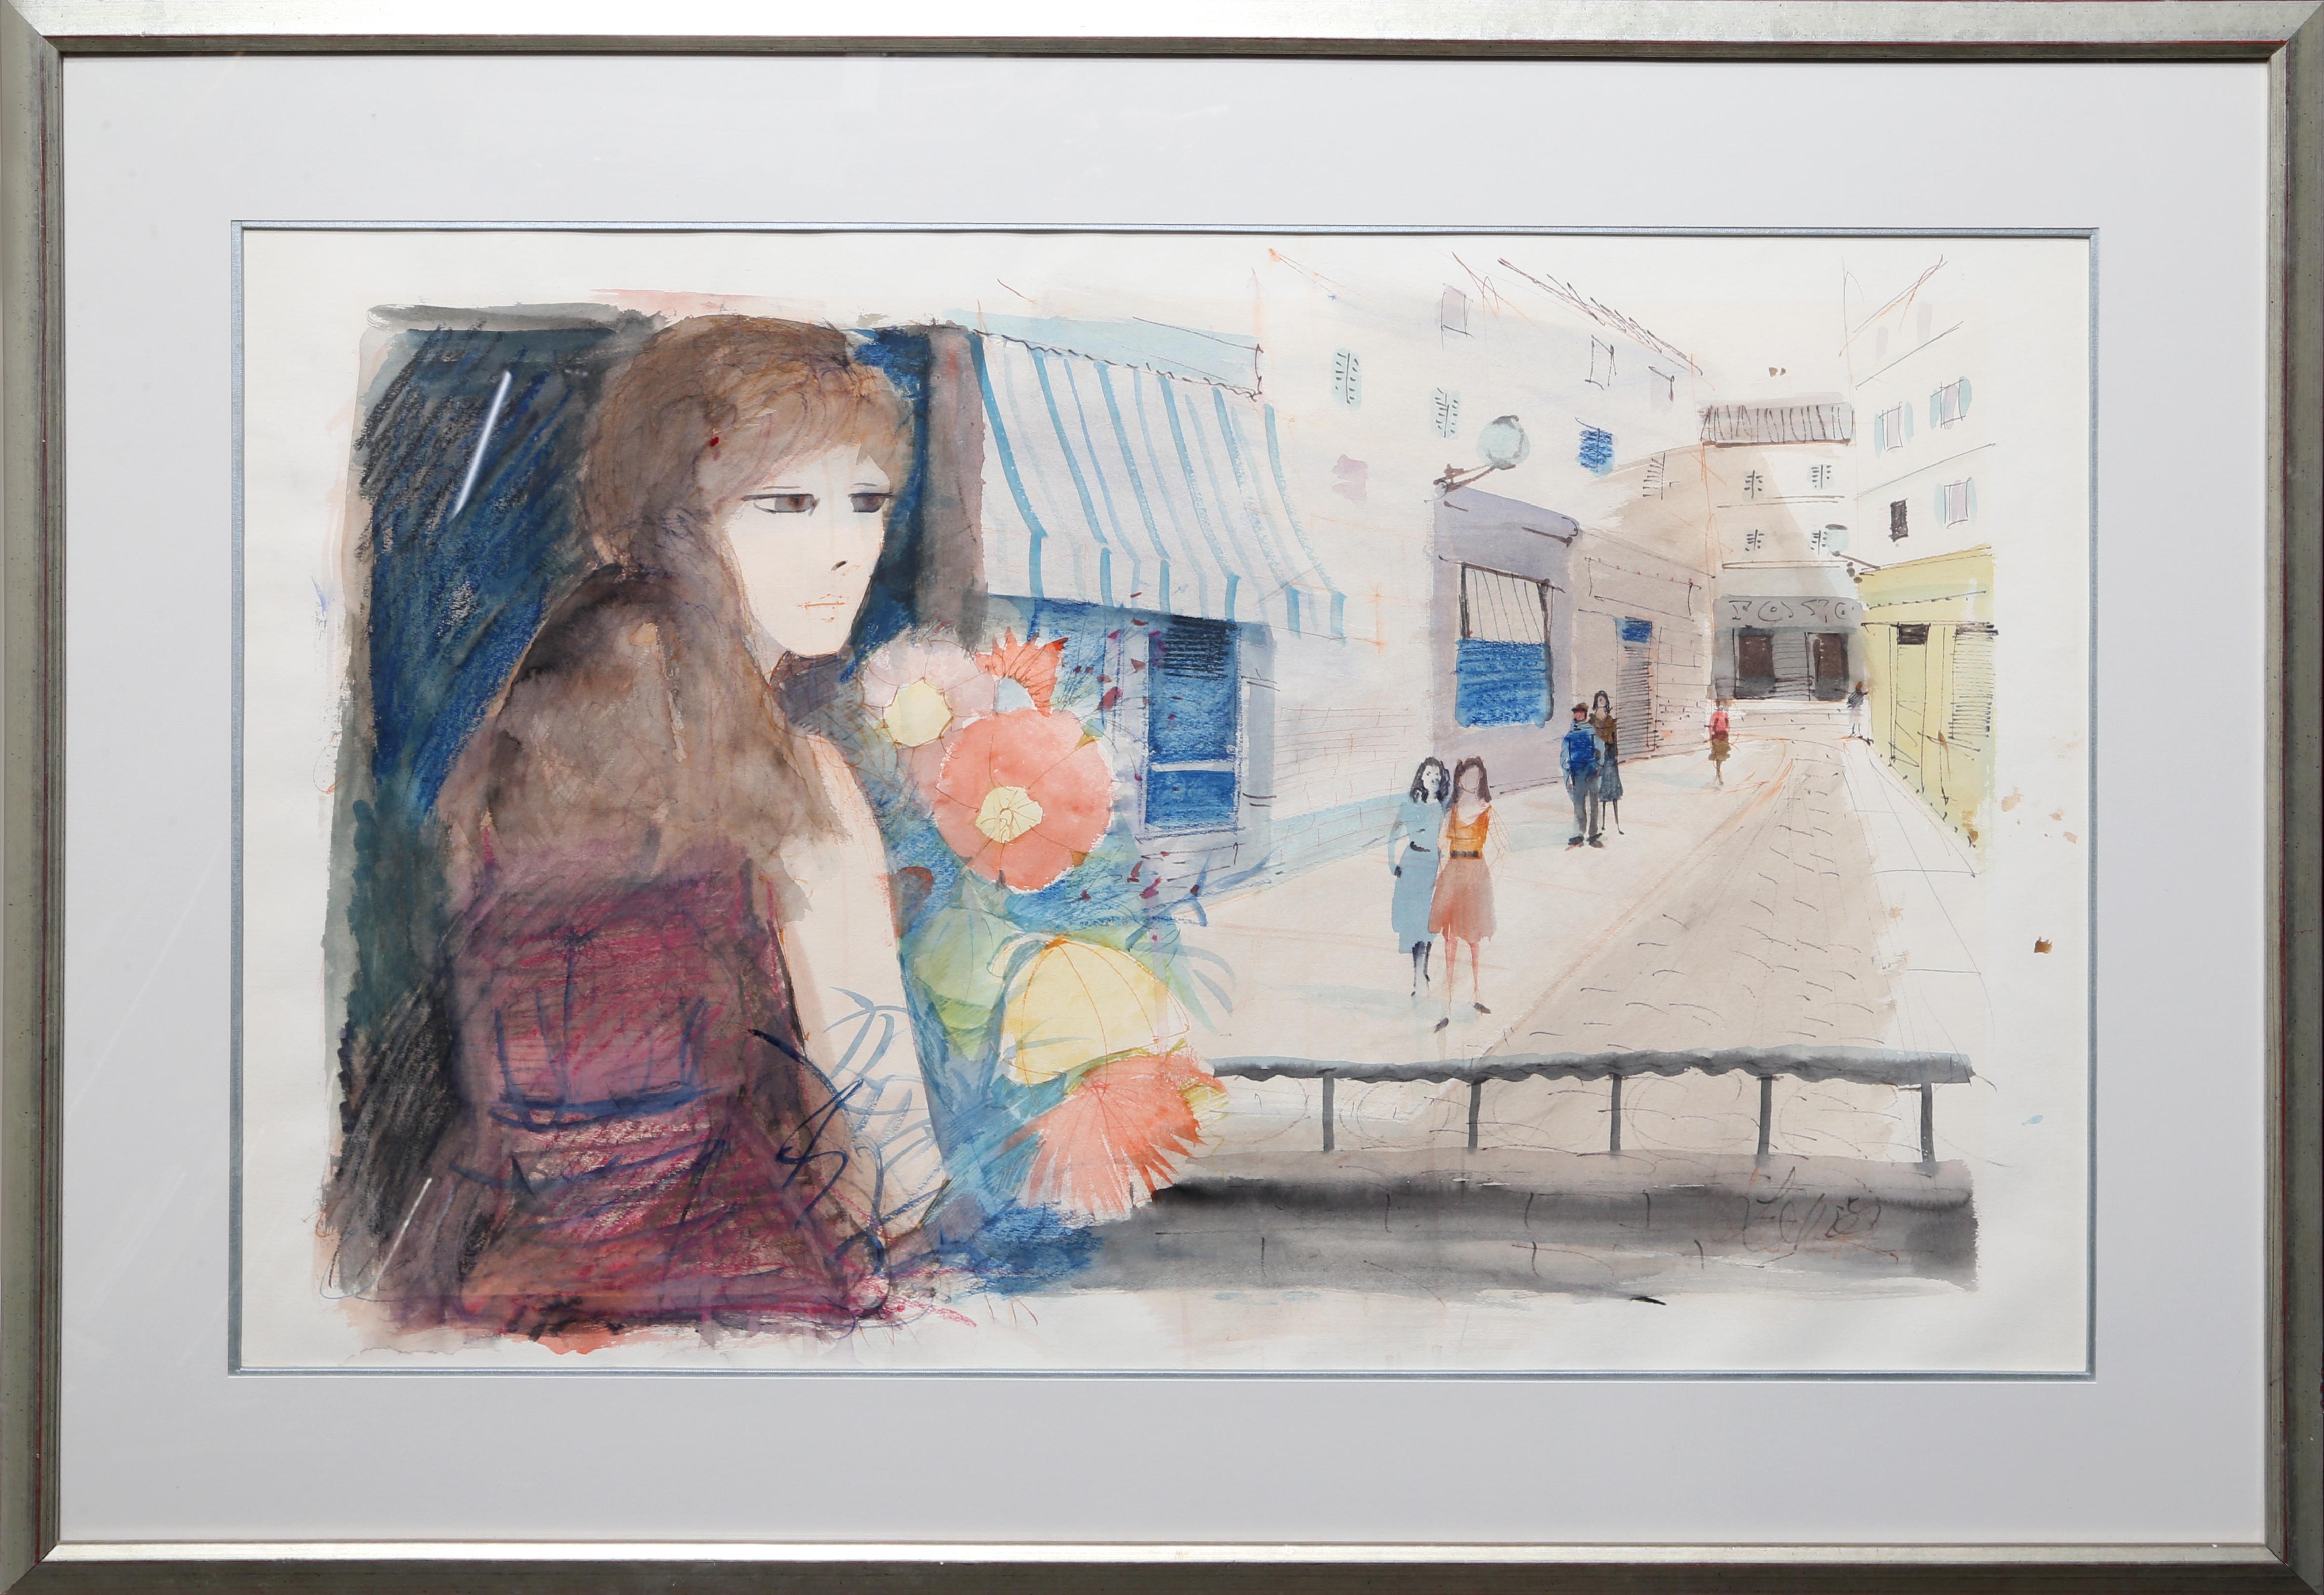 Künstler: Charles Levier, Franzose (1920 - 2003)
Titel: Mädchen mit Blumen
Jahr: um 1970
Medium: Aquarell auf Papier, signiert
Bildgröße: 23 x 33,5 Zoll
Größe: 26 in. x 36 in. (66,04 cm x 91,44 cm)
Rahmengröße: 32,5 x 37 Zoll